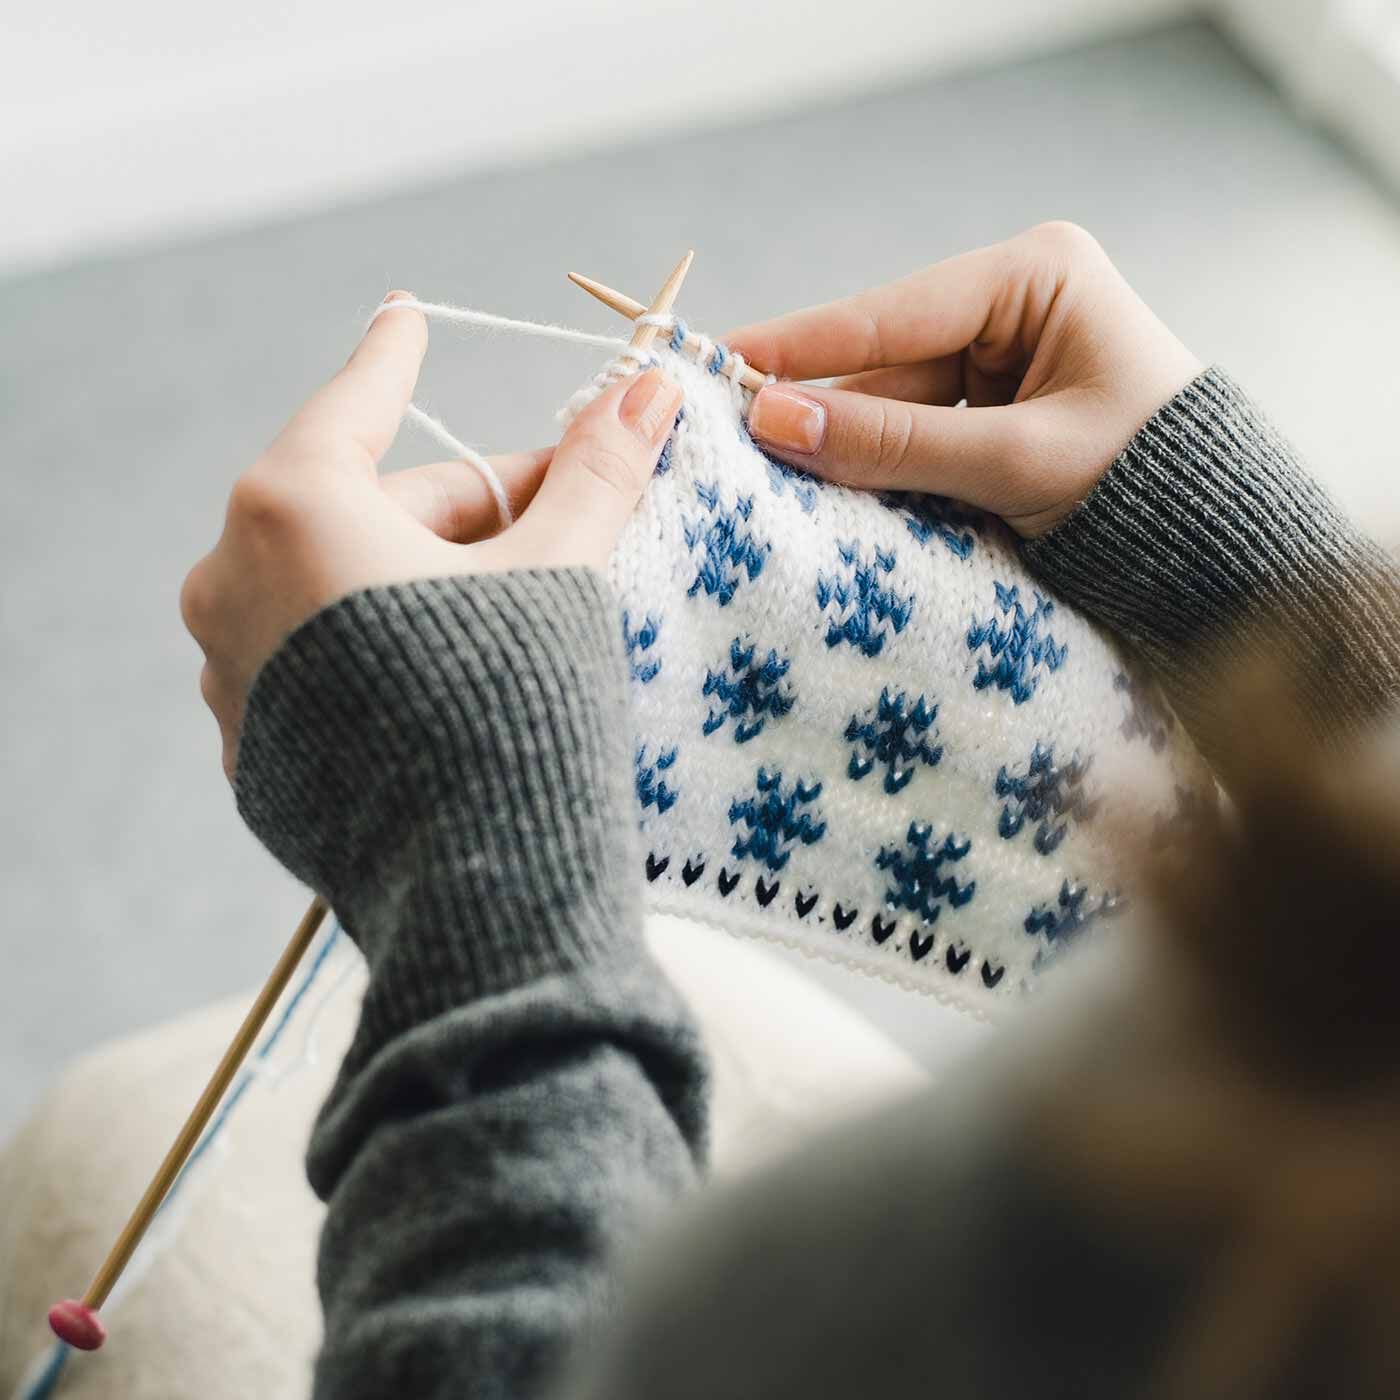 Couturier|自然からの贈りもの めくるめく北欧模様を楽しむ棒針編みサンプラーの会